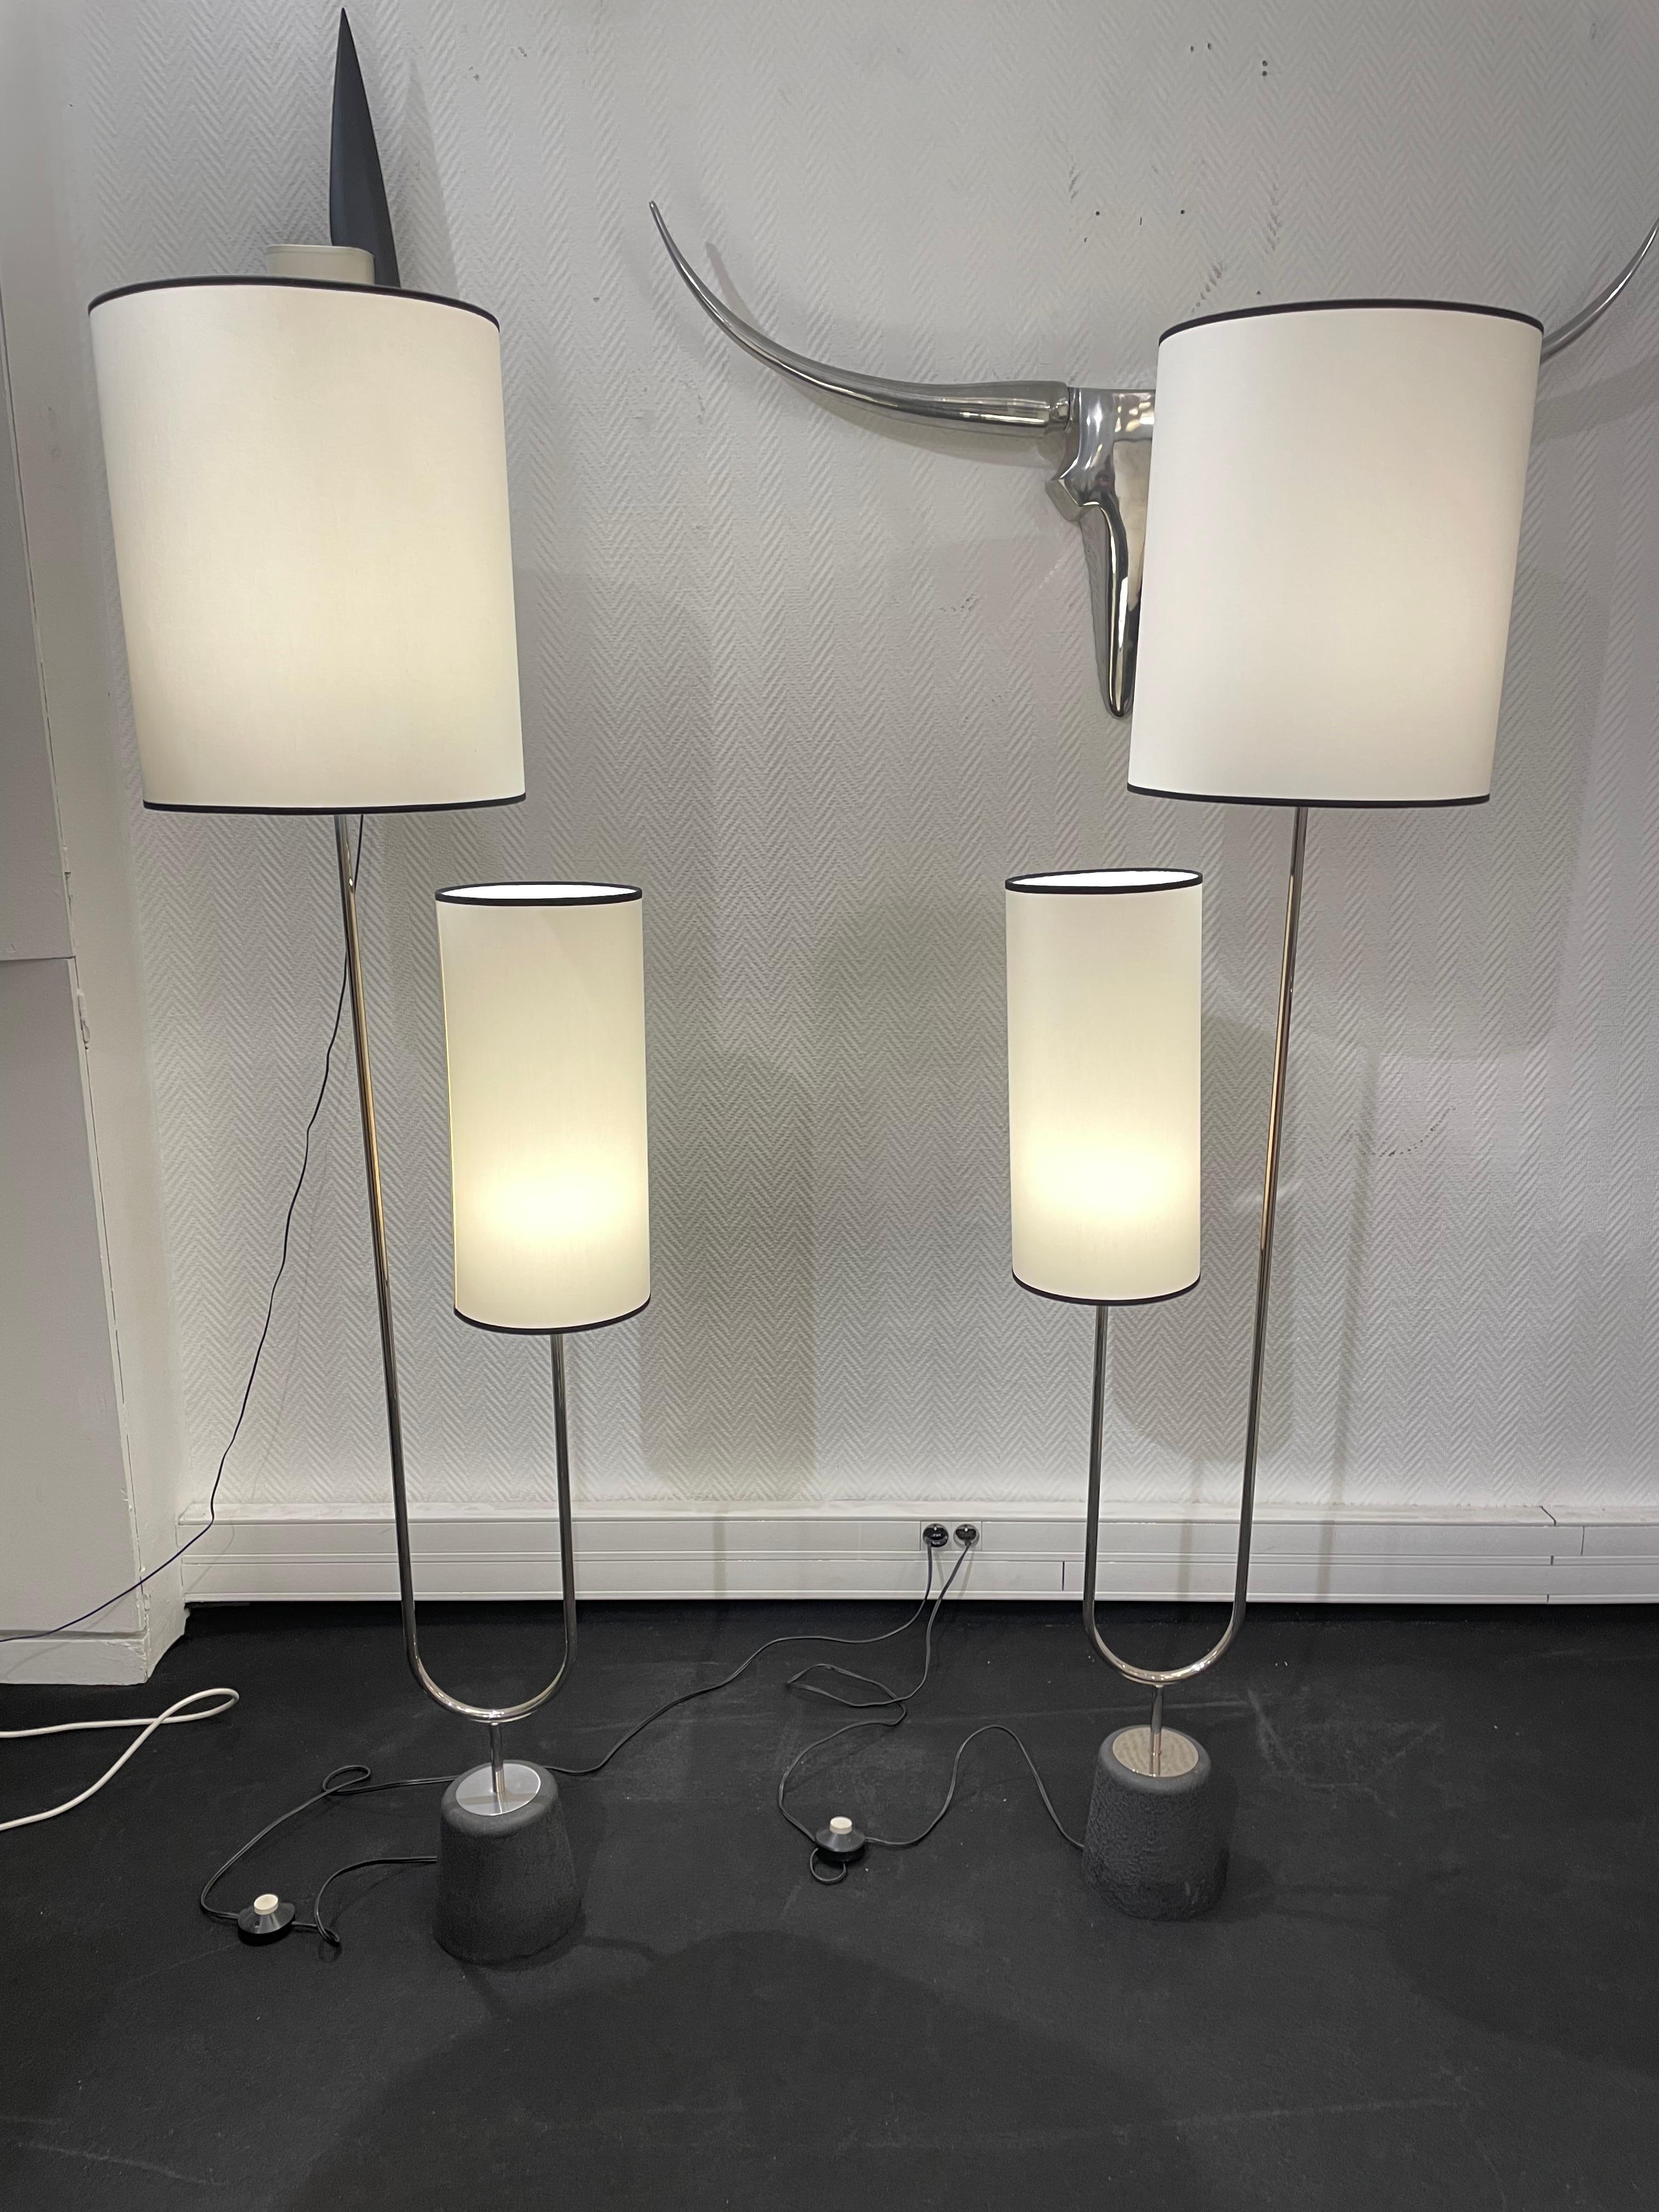 Pair of floor lamps by Arlus 
From 1960
Métal.